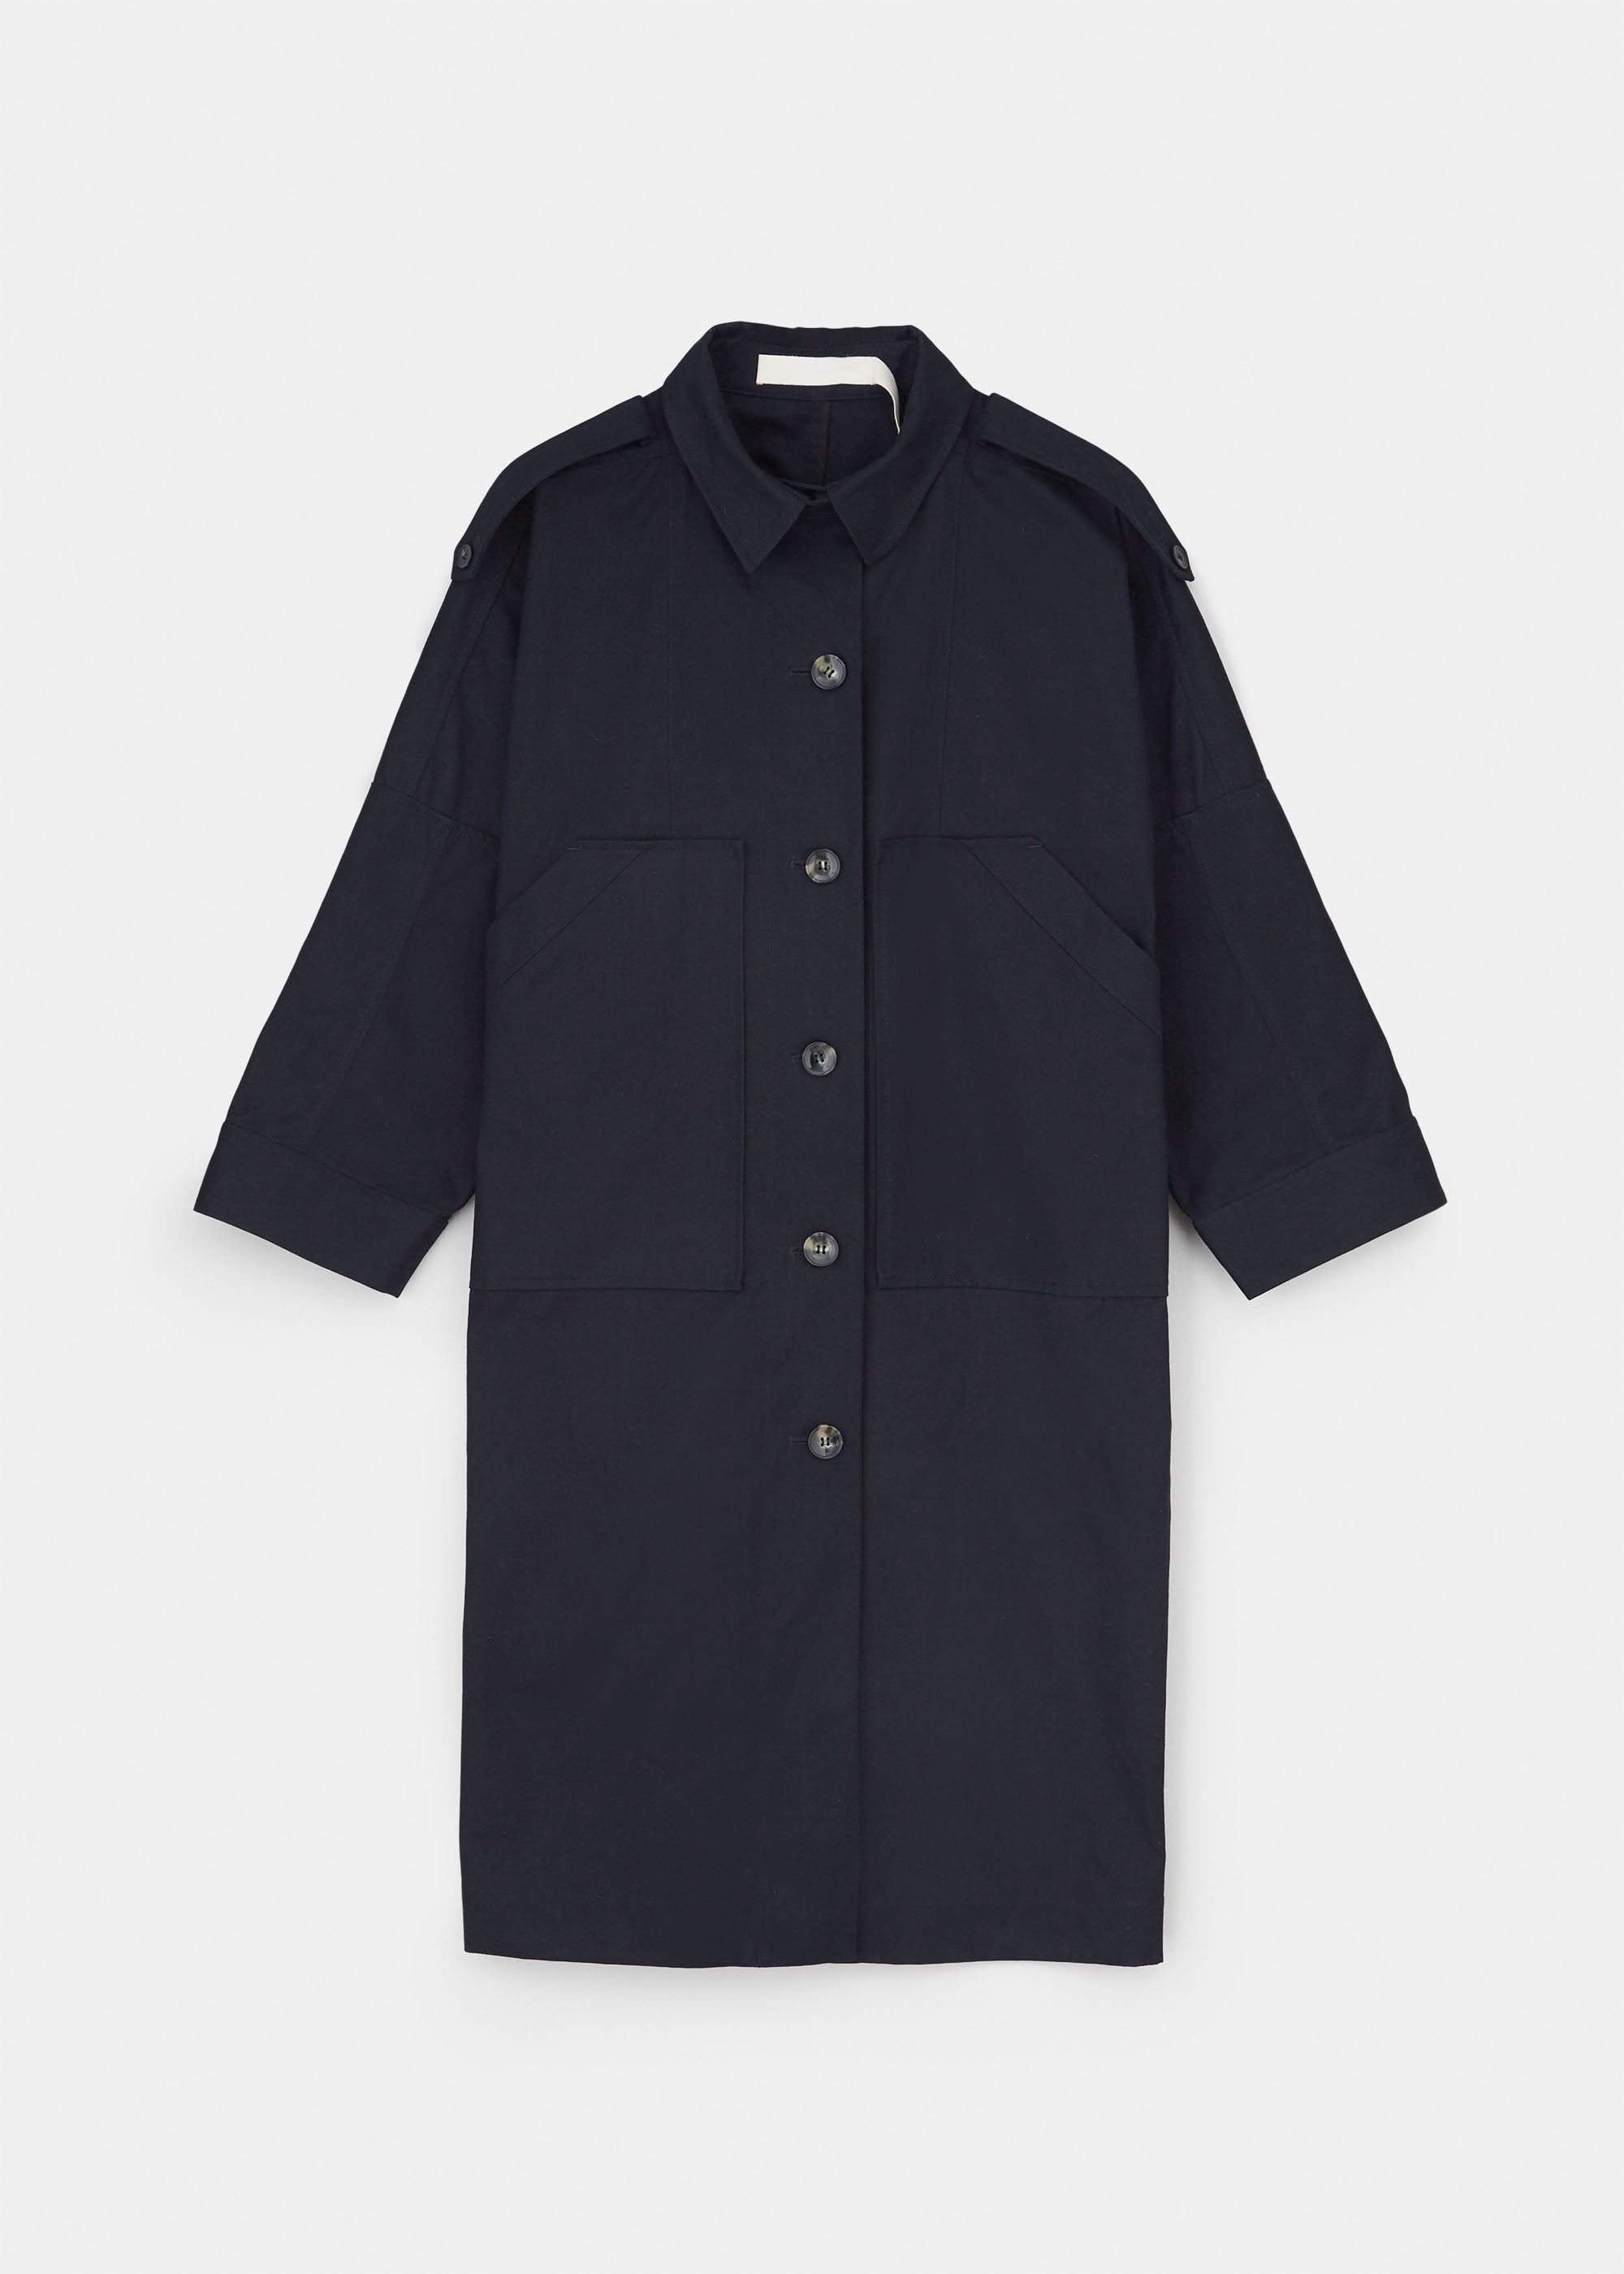 Jean ventile coat | Black Navy